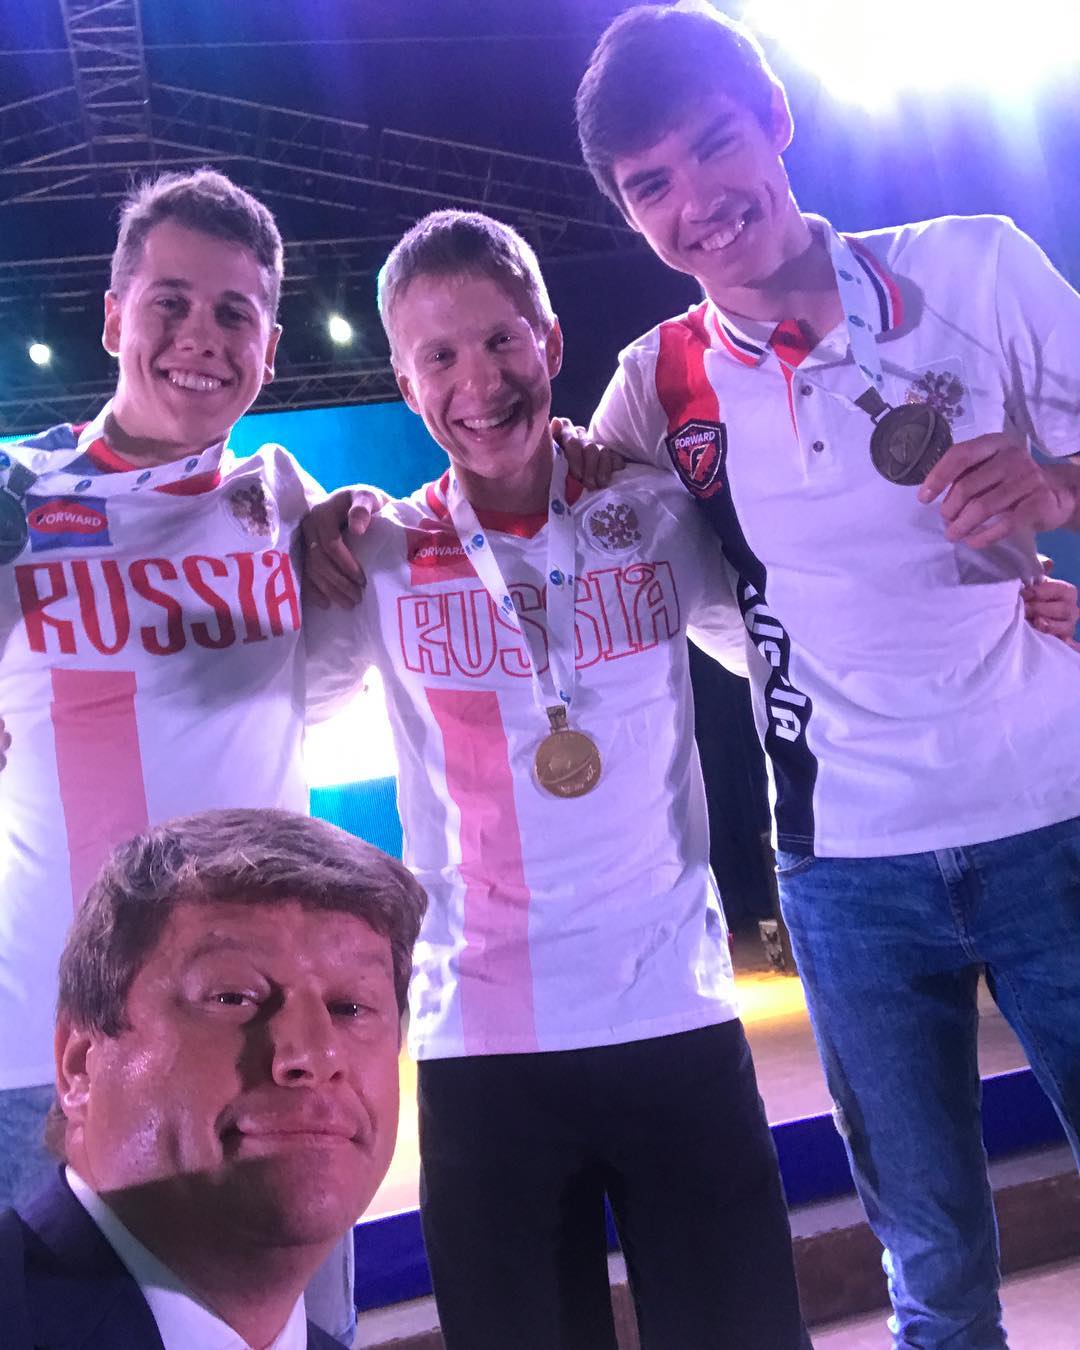 Дмитрий Губерниев добавил новое селфи с призерами ЛЧМ-2017 по биатлону в Инстаграм